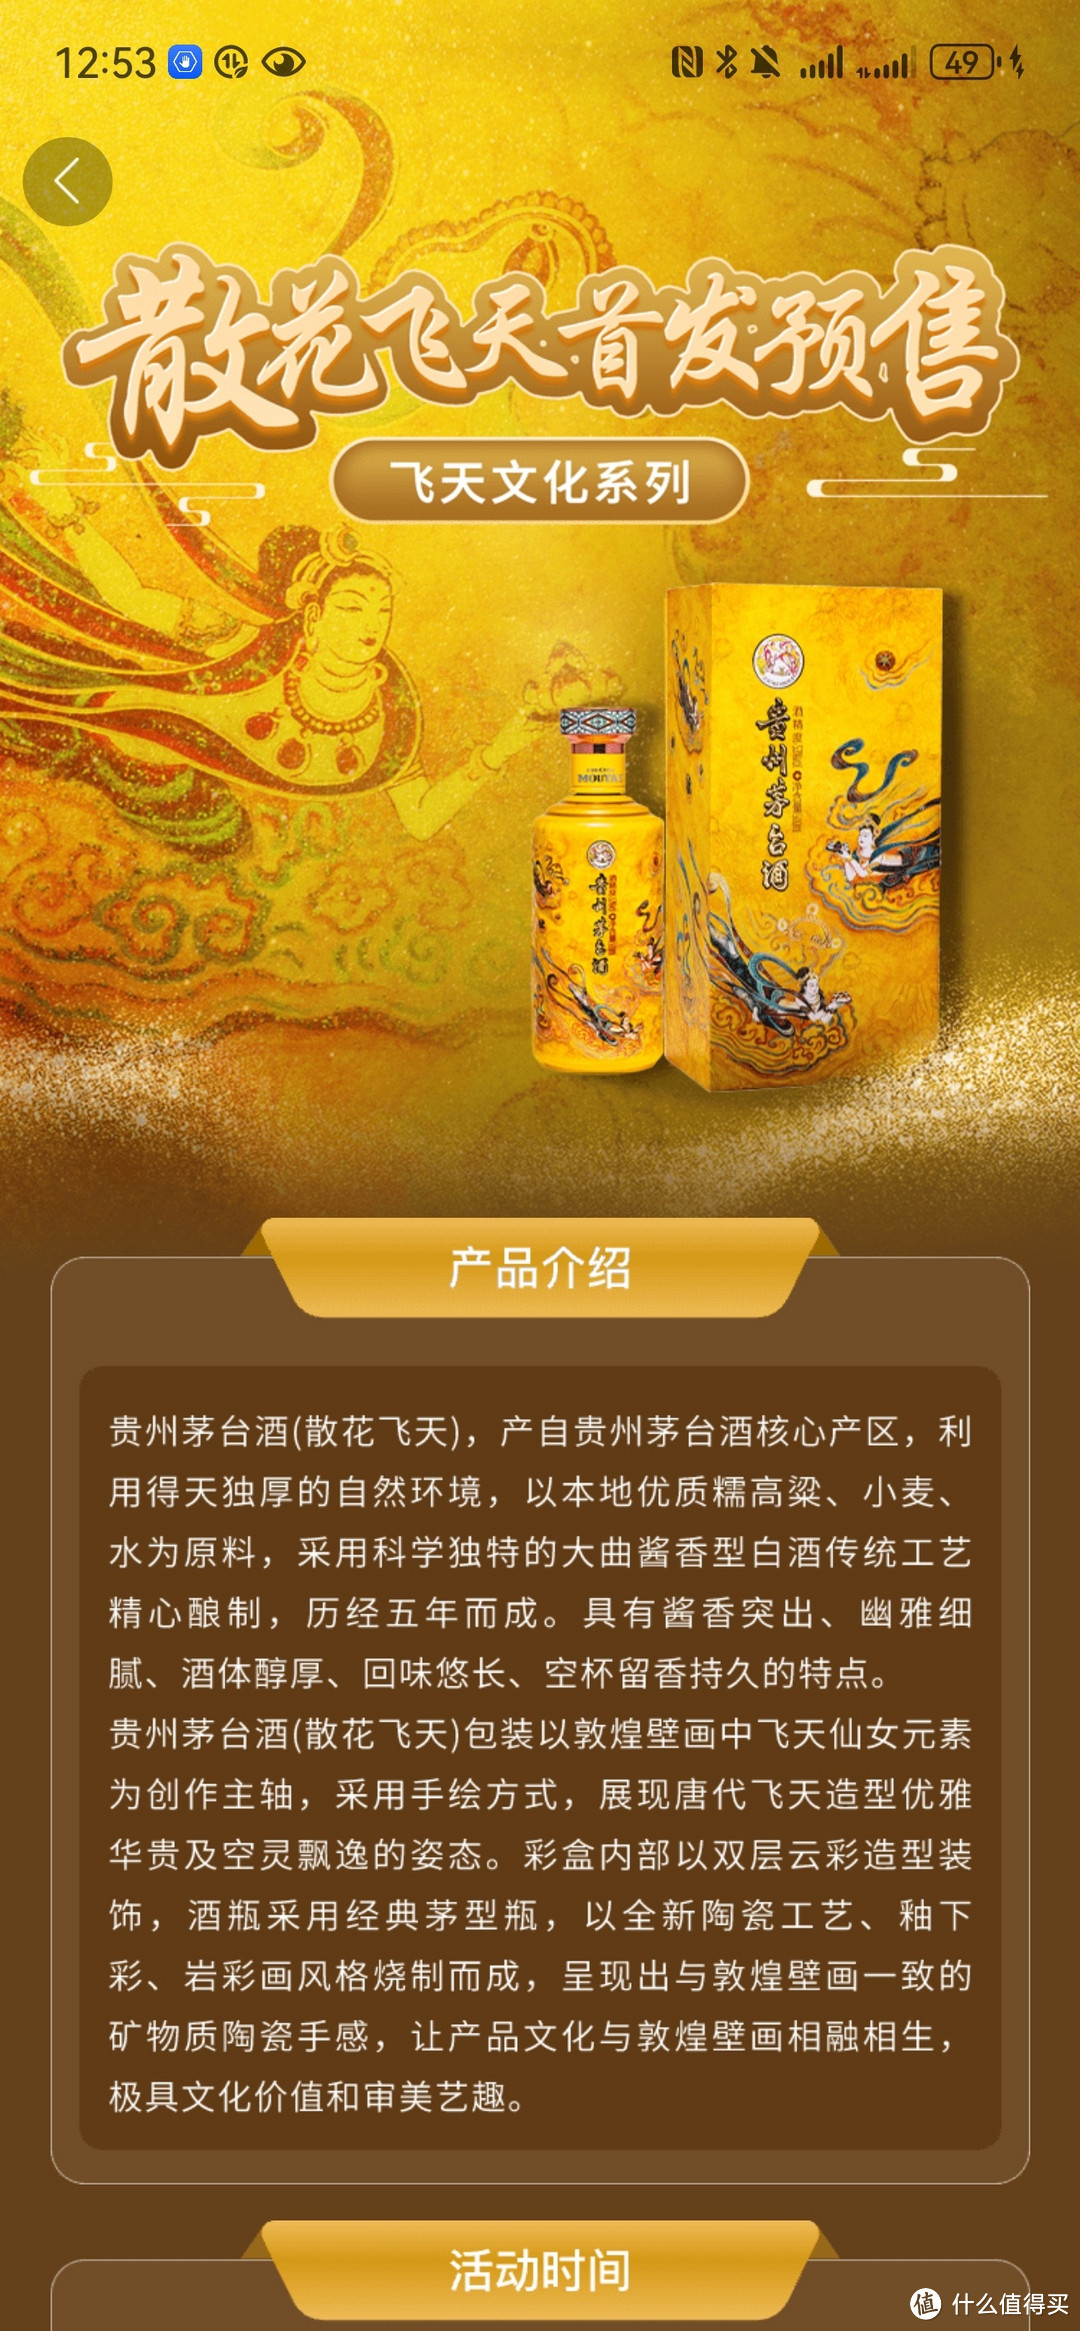 茅台文化新篇章，"散花飞天"发售，限量9999瓶